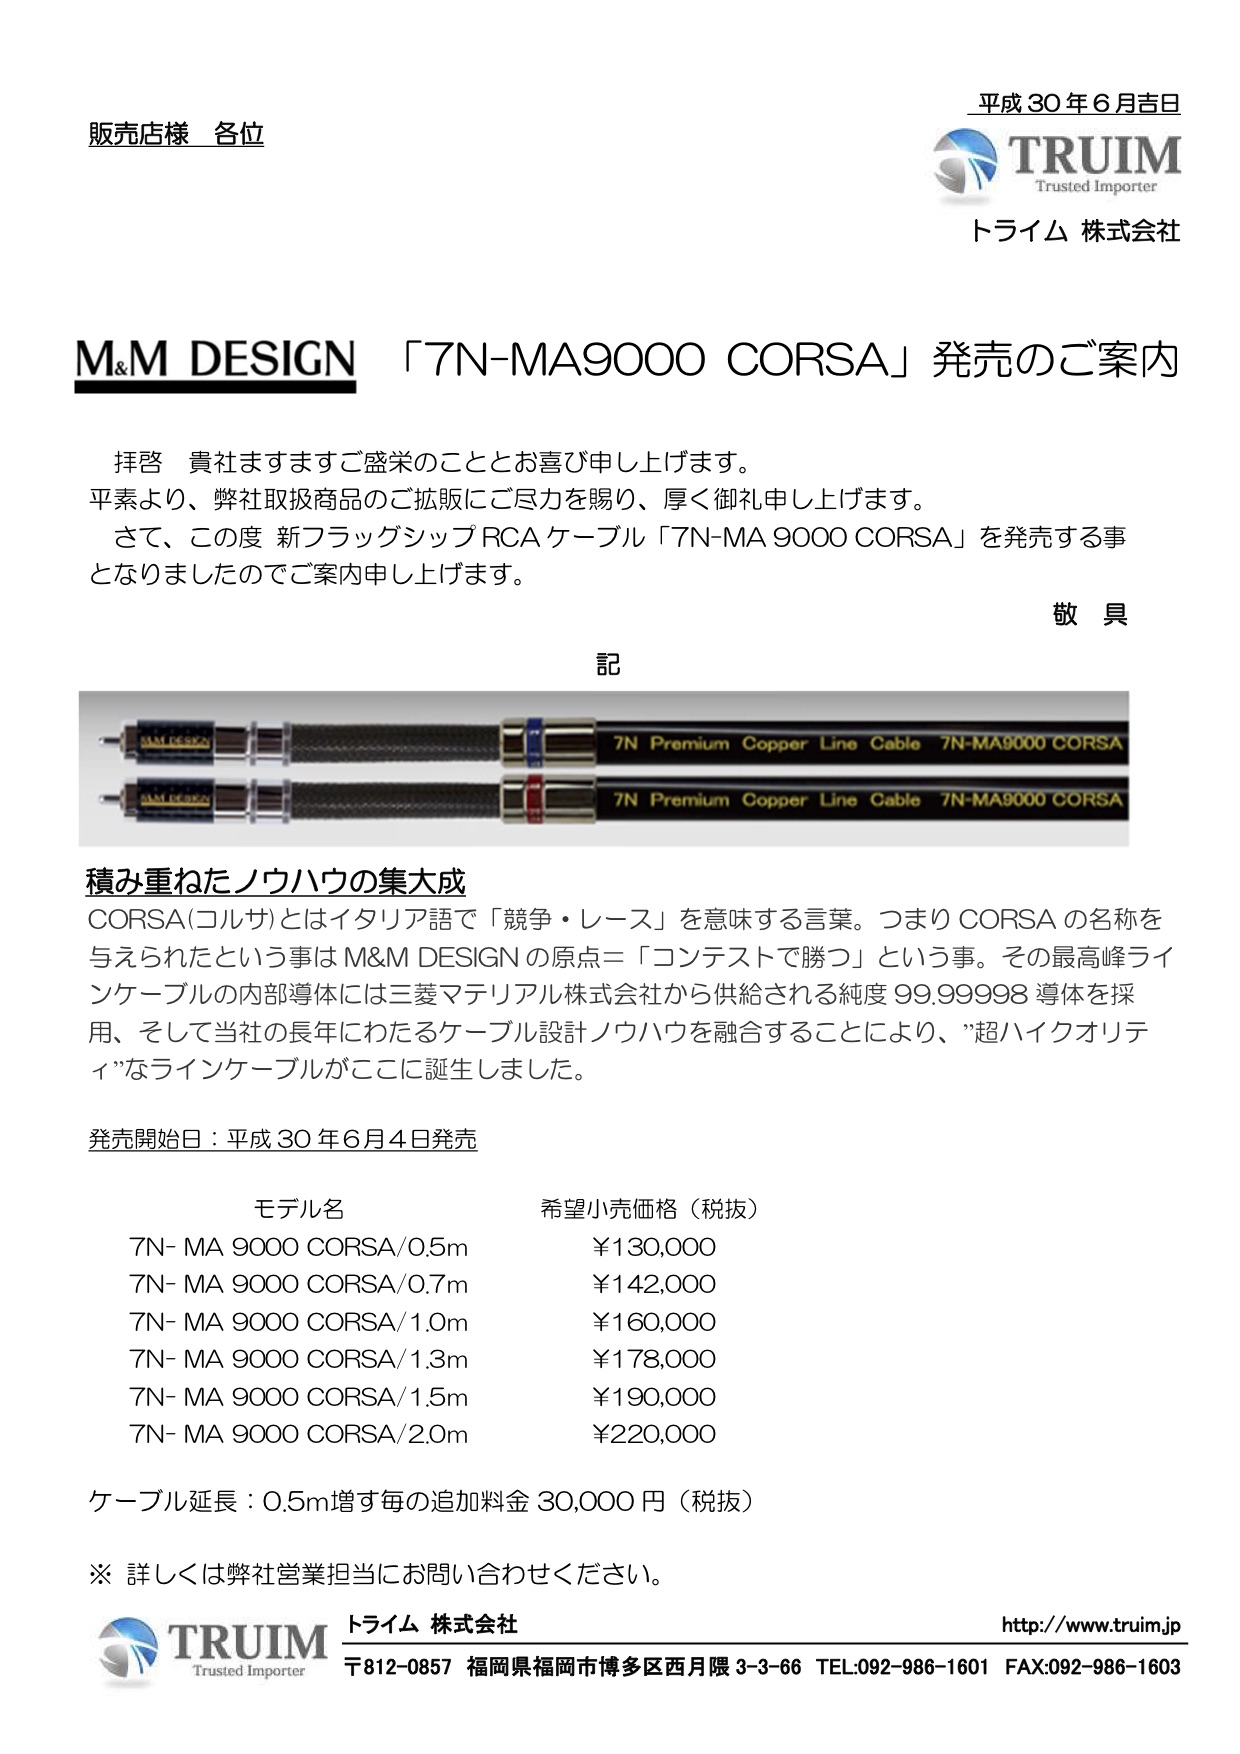 特価品コーナー☆ MMデザイン 7N-MA9000-Corsa 1.0メートル 純度99.99998導体を採用した最高峰に君臨するケーブル  最高峰を体験できます